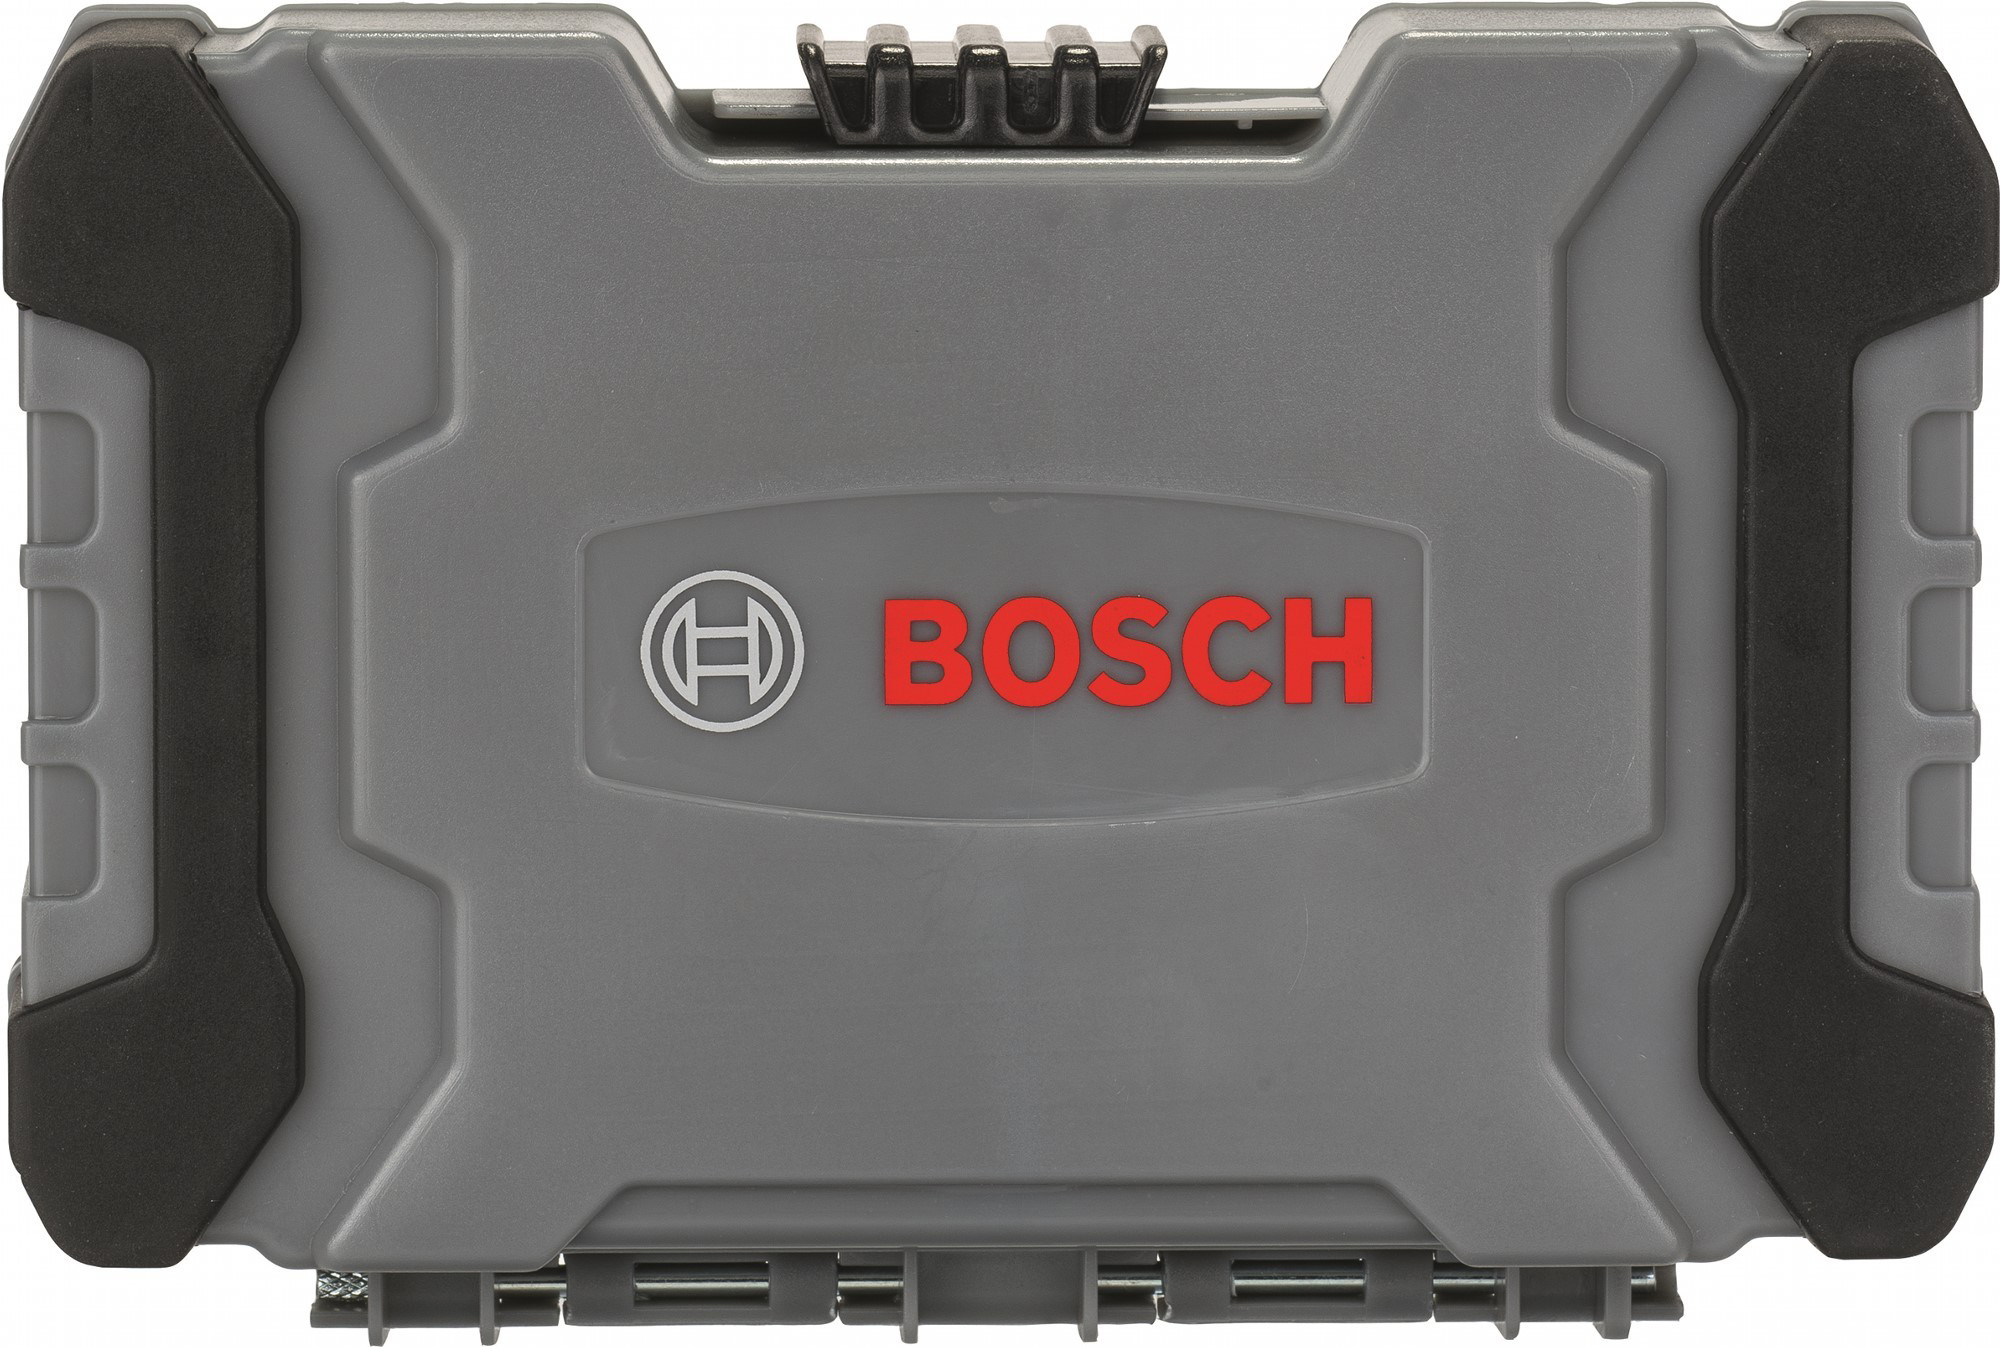 Набор сверл и насадок Bosch 2607017326 35 шт. отзывы - изображения 5